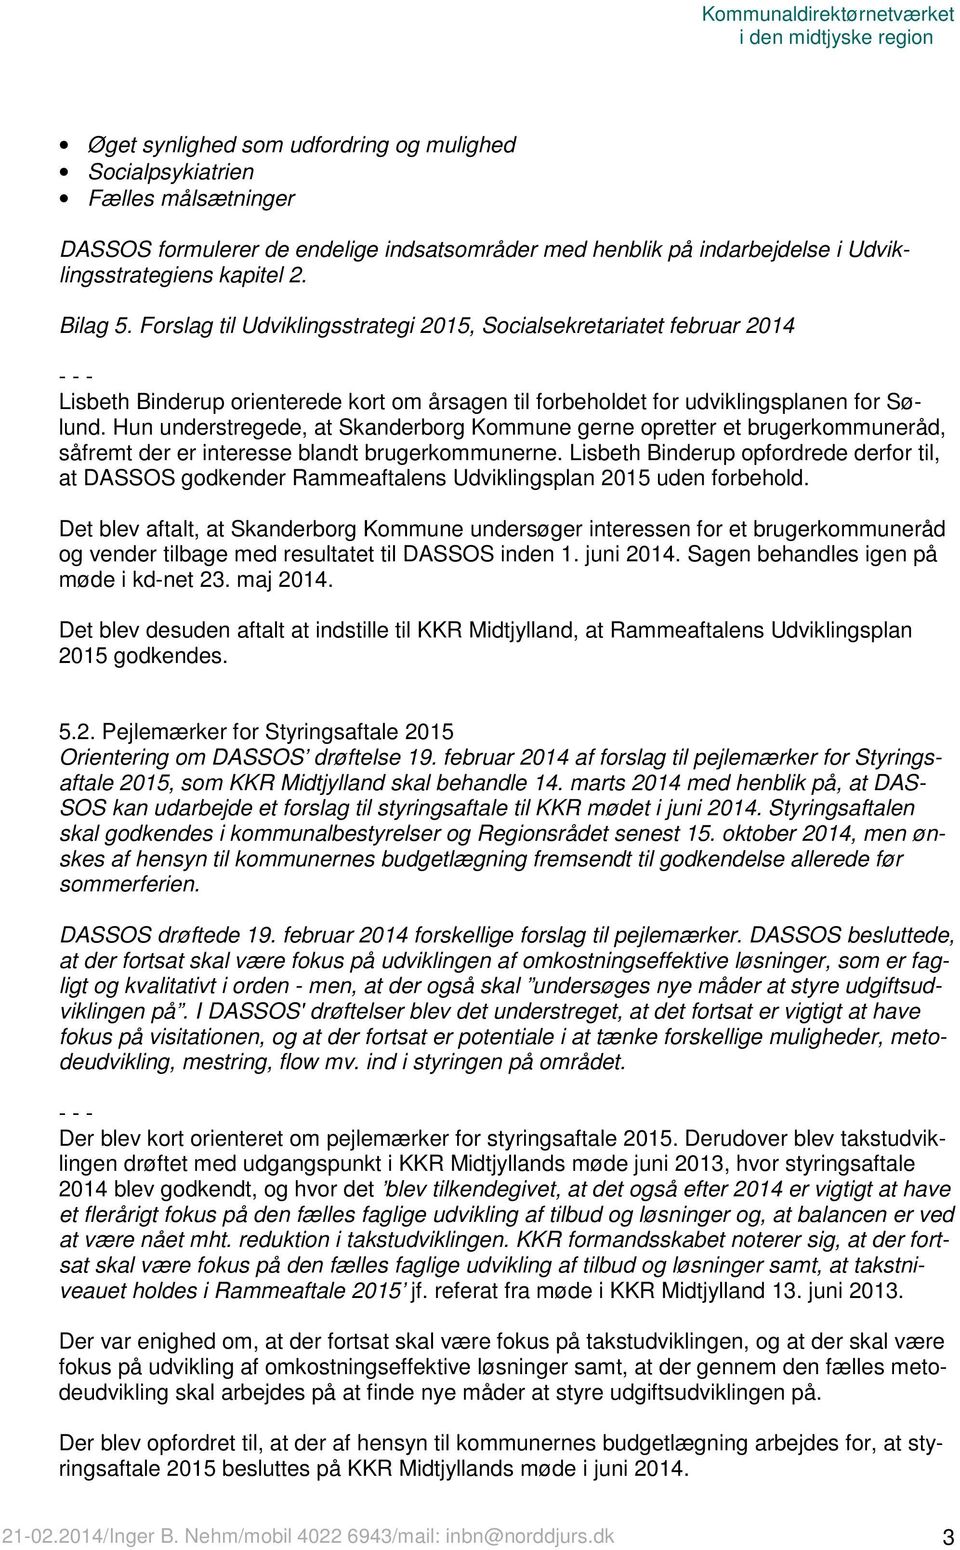 Forslag til Udviklingsstrategi 2015, Socialsekretariatet februar 2014 - - - Lisbeth Binderup orienterede kort om årsagen til forbeholdet for udviklingsplanen for Sølund.